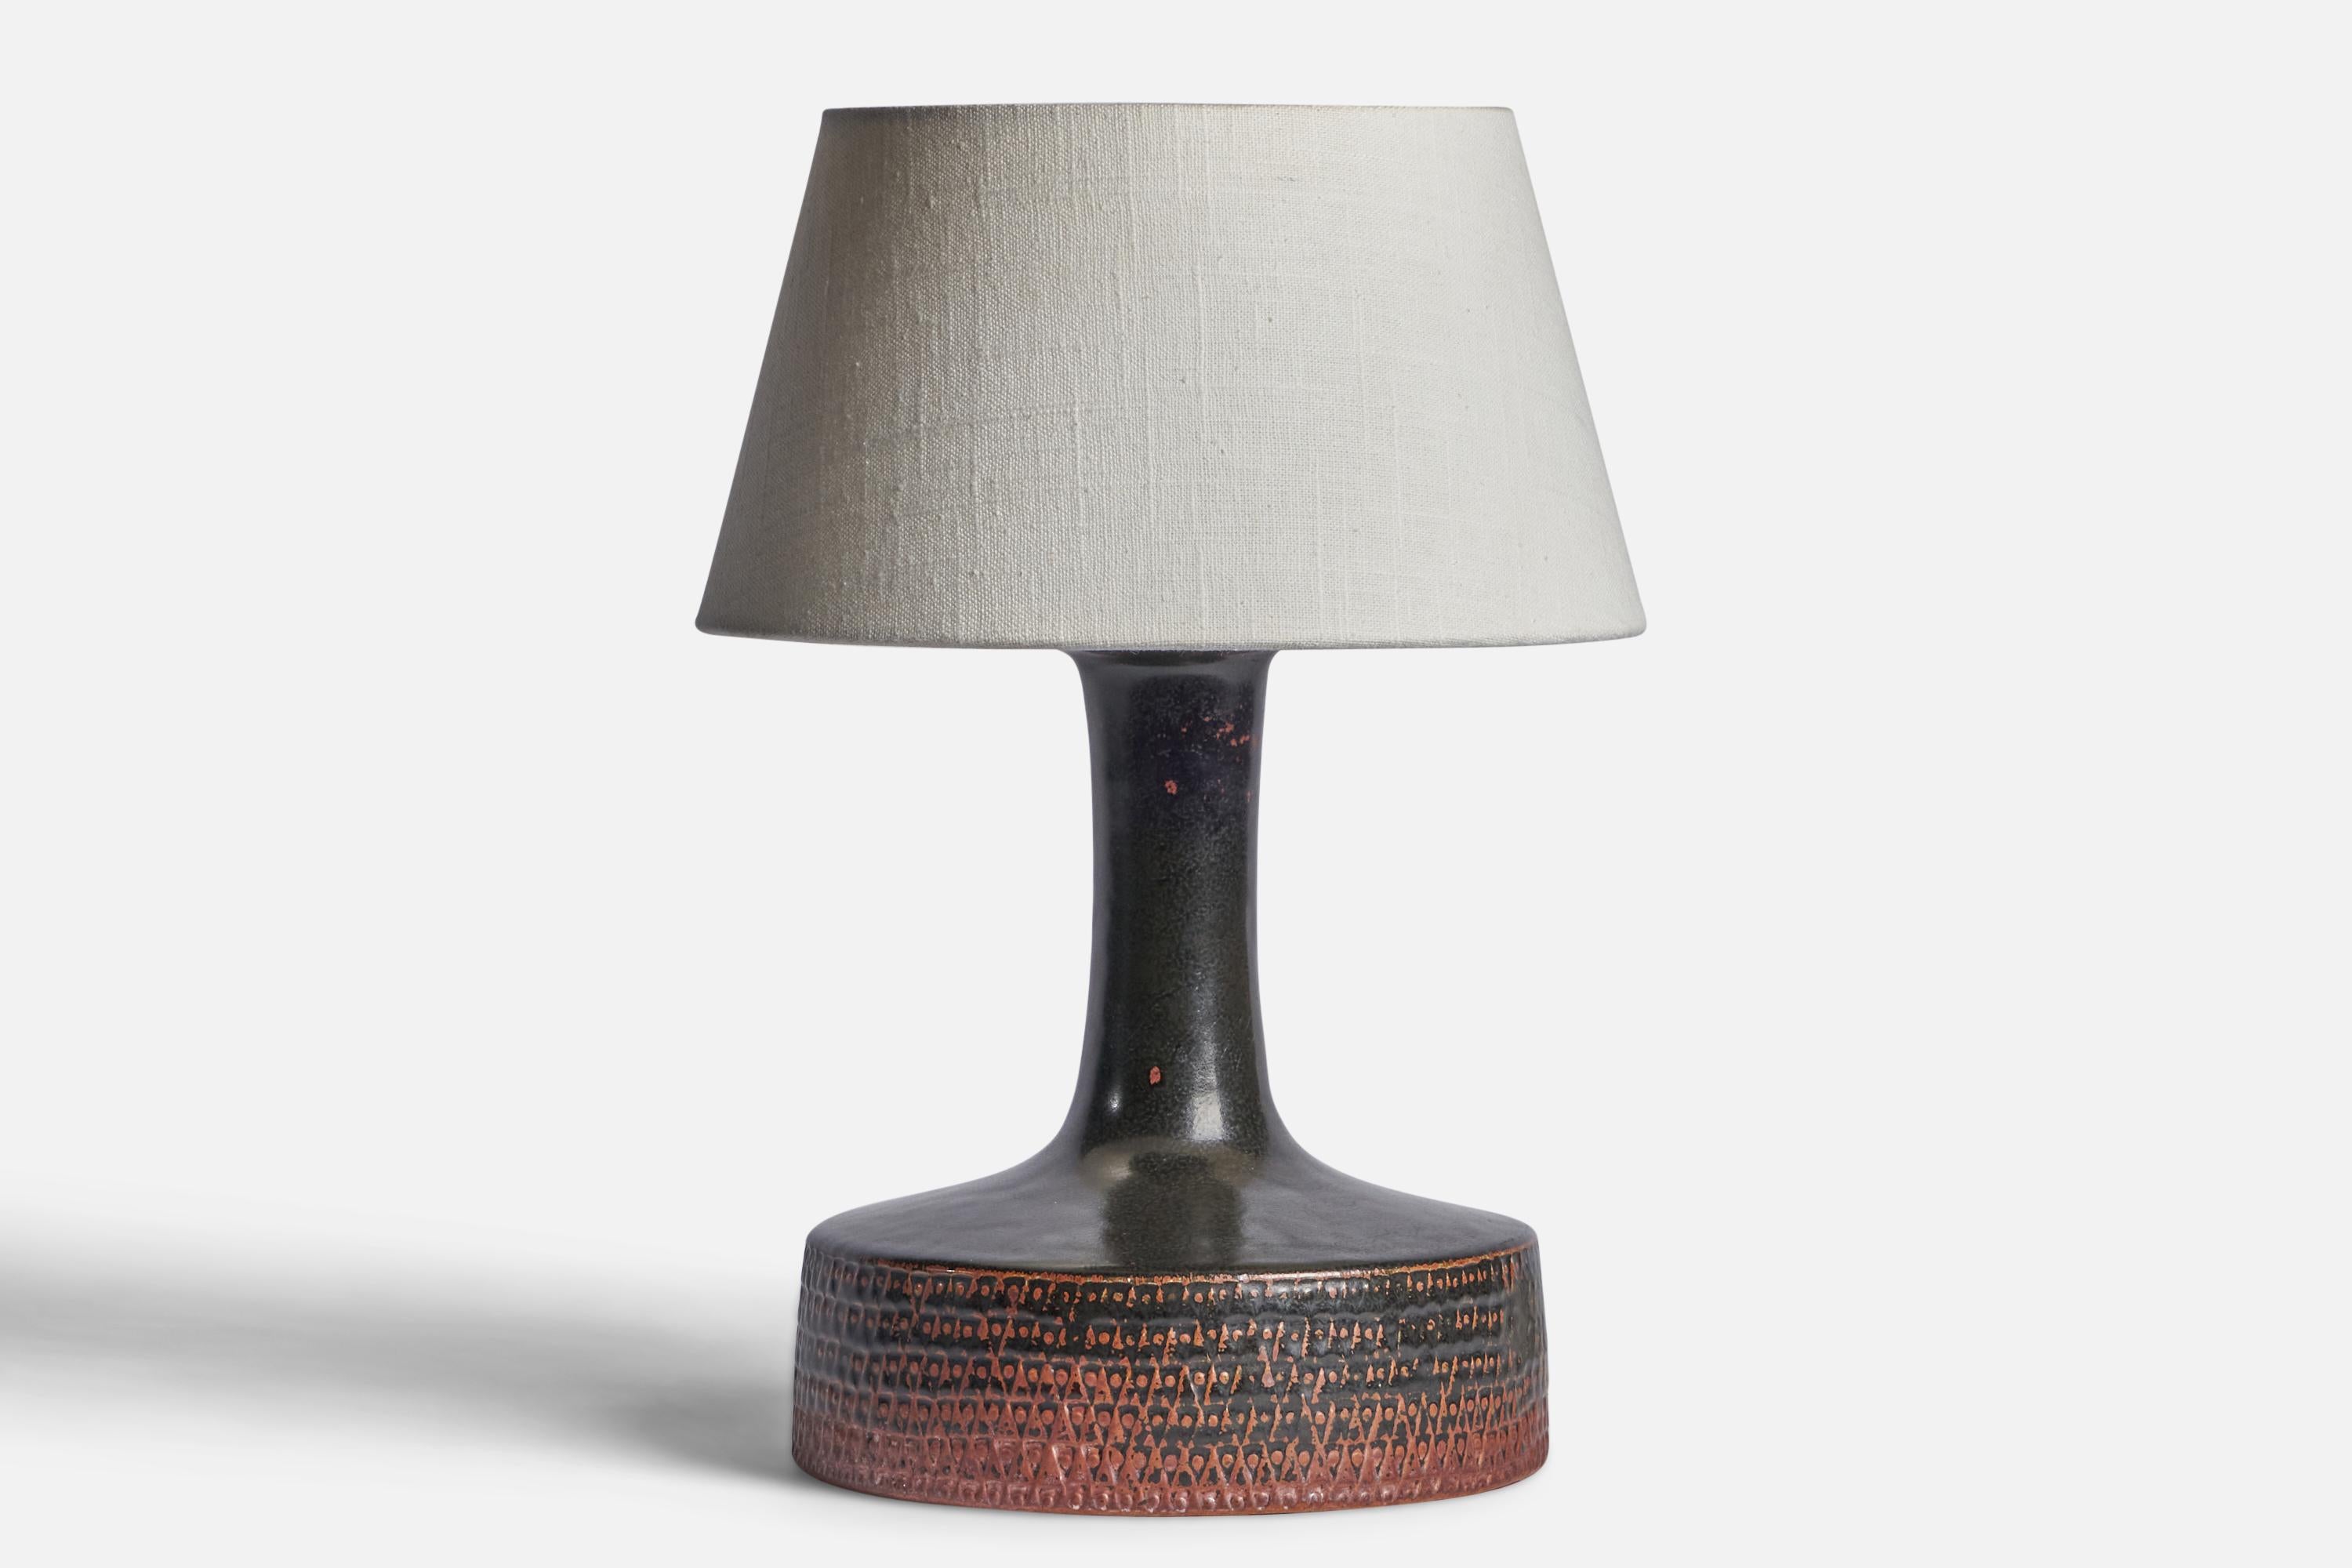 Tischlampe aus schwarzem und orangefarbenem Steingut, entworfen von Stig Lindberg und hergestellt von Gustavsberg, Schweden, 1950er Jahre.

Abmessungen der Lampe (Zoll): 11